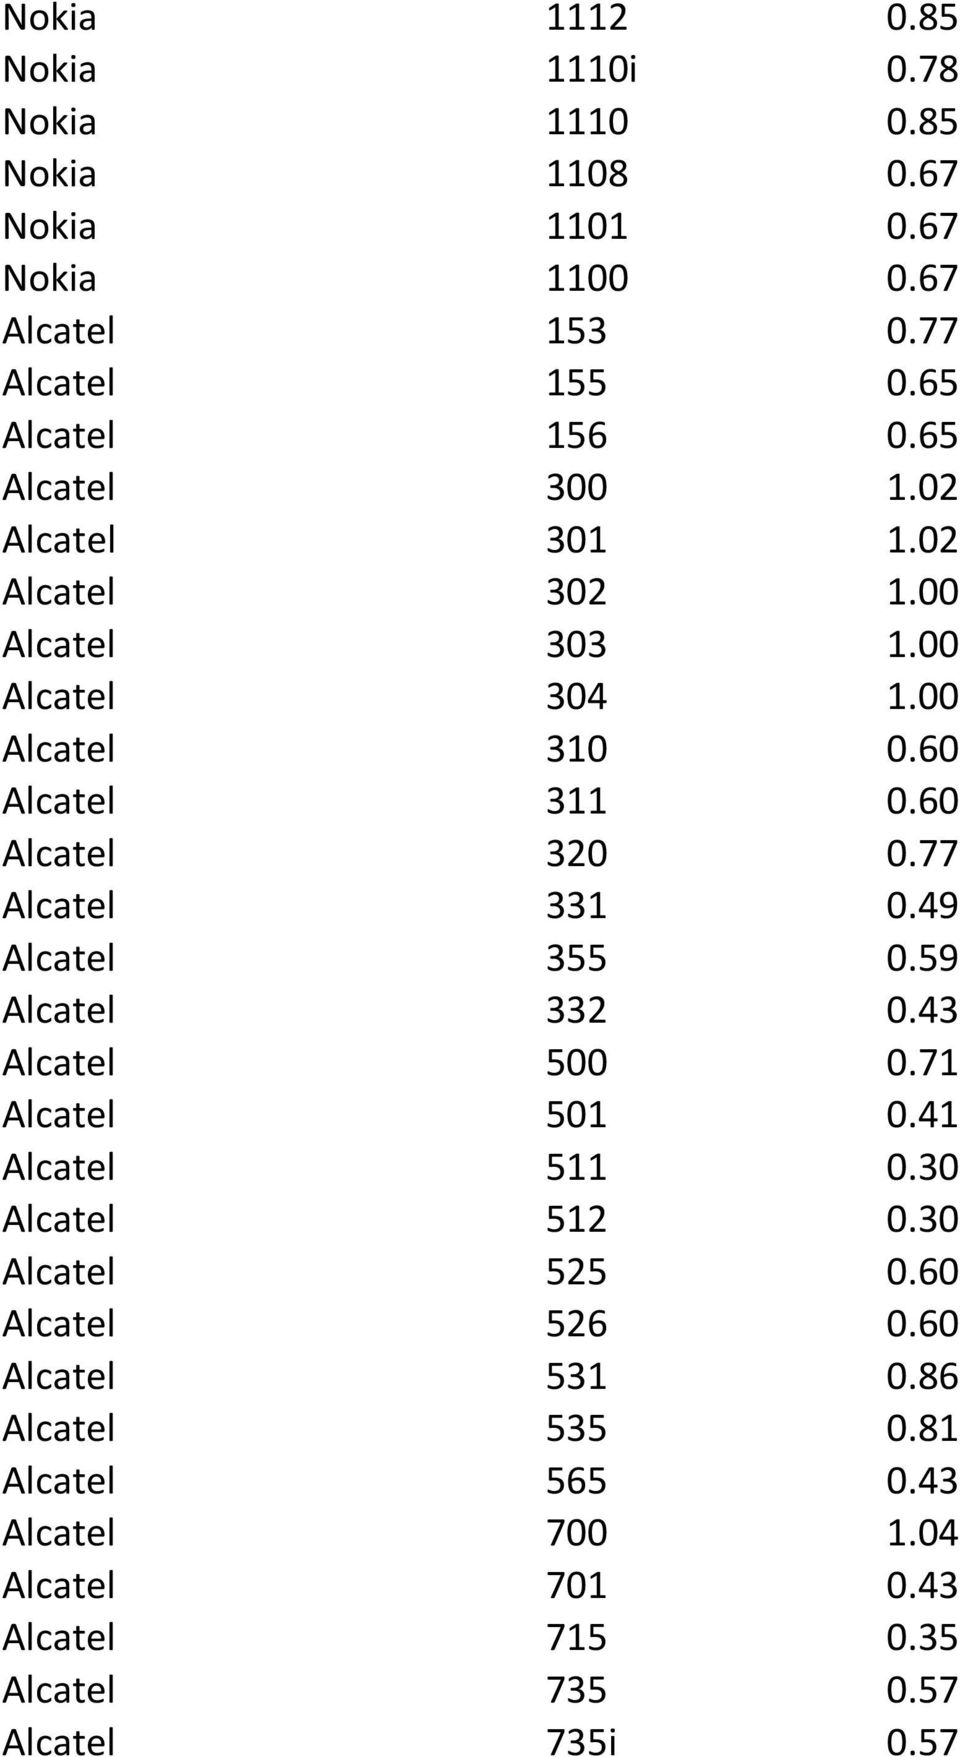 60 Alcatel 320 0.77 Alcatel 331 0.49 Alcatel 355 0.59 Alcatel 332 0.43 Alcatel 500 0.71 Alcatel 501 0.41 Alcatel 511 0.30 Alcatel 512 0.